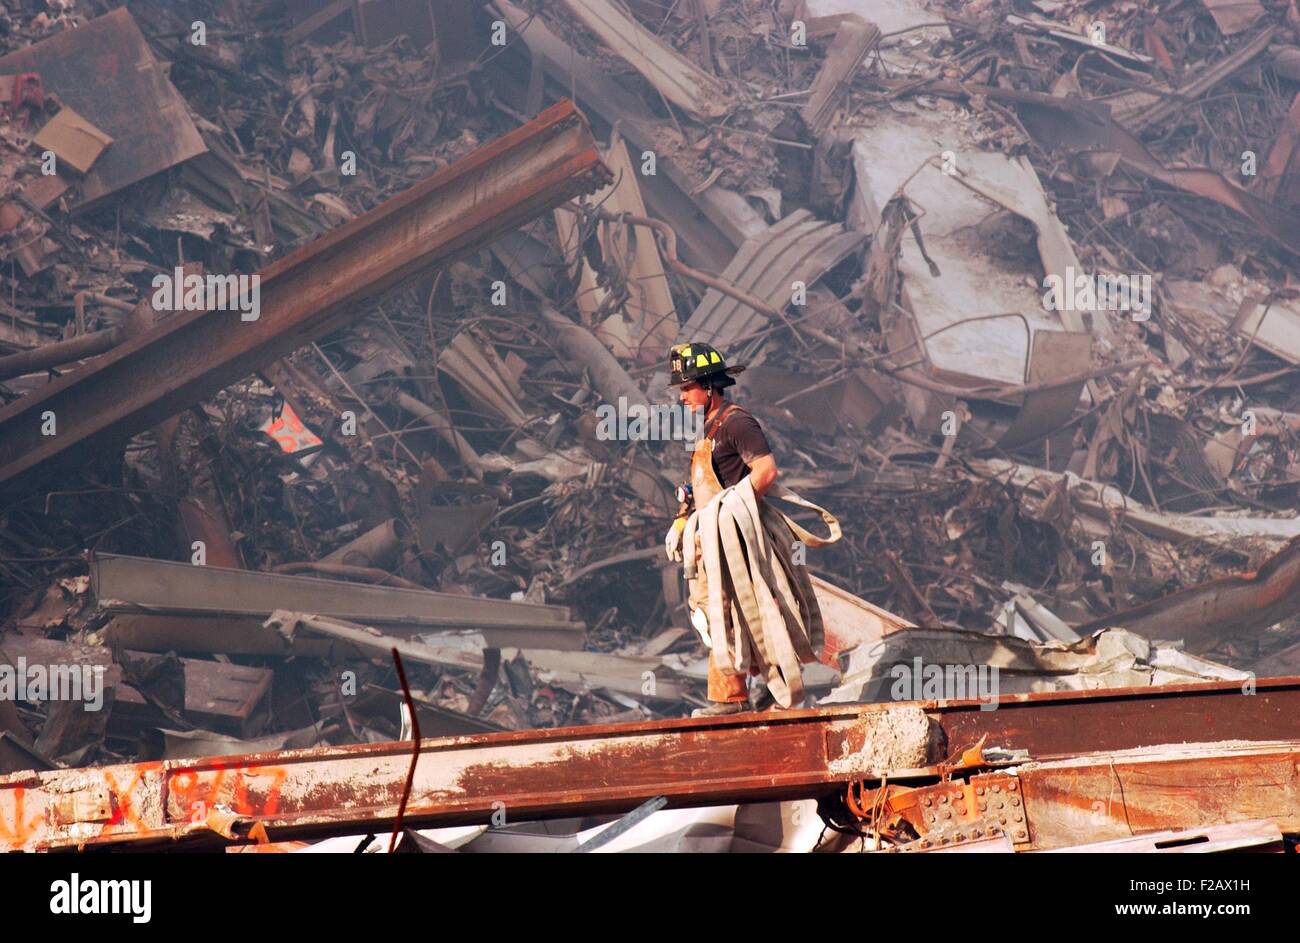 NYC fire fighter lleva una manguera contra incendios más incendios lentos y restos en el Ground Zero, 18 de septiembre de 2001. World Trade Center, en Nueva York, después del 11 de septiembre de 2001 ataques terroristas. (BSLOC_2015_2_97) Foto de stock